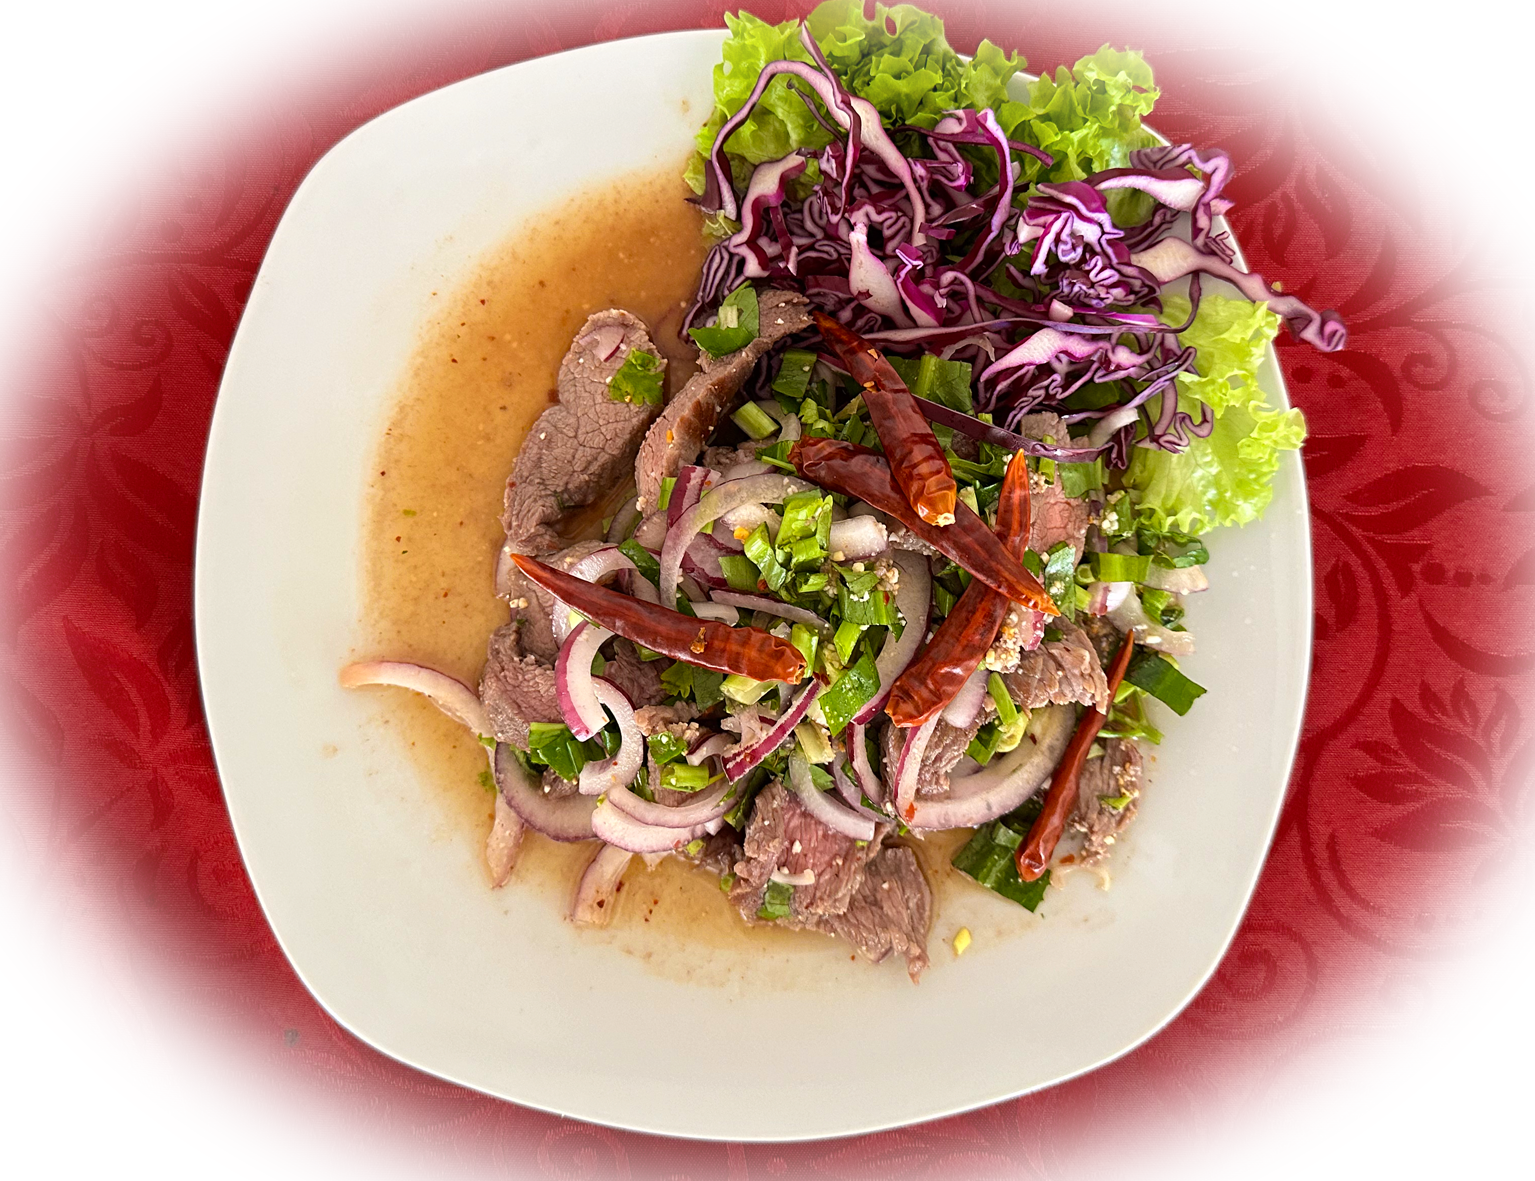 Nam Tok, auch bekannt als "Wasserfall-Salat", ist ein thailändisches Gericht, das ähnlich wie Laab z